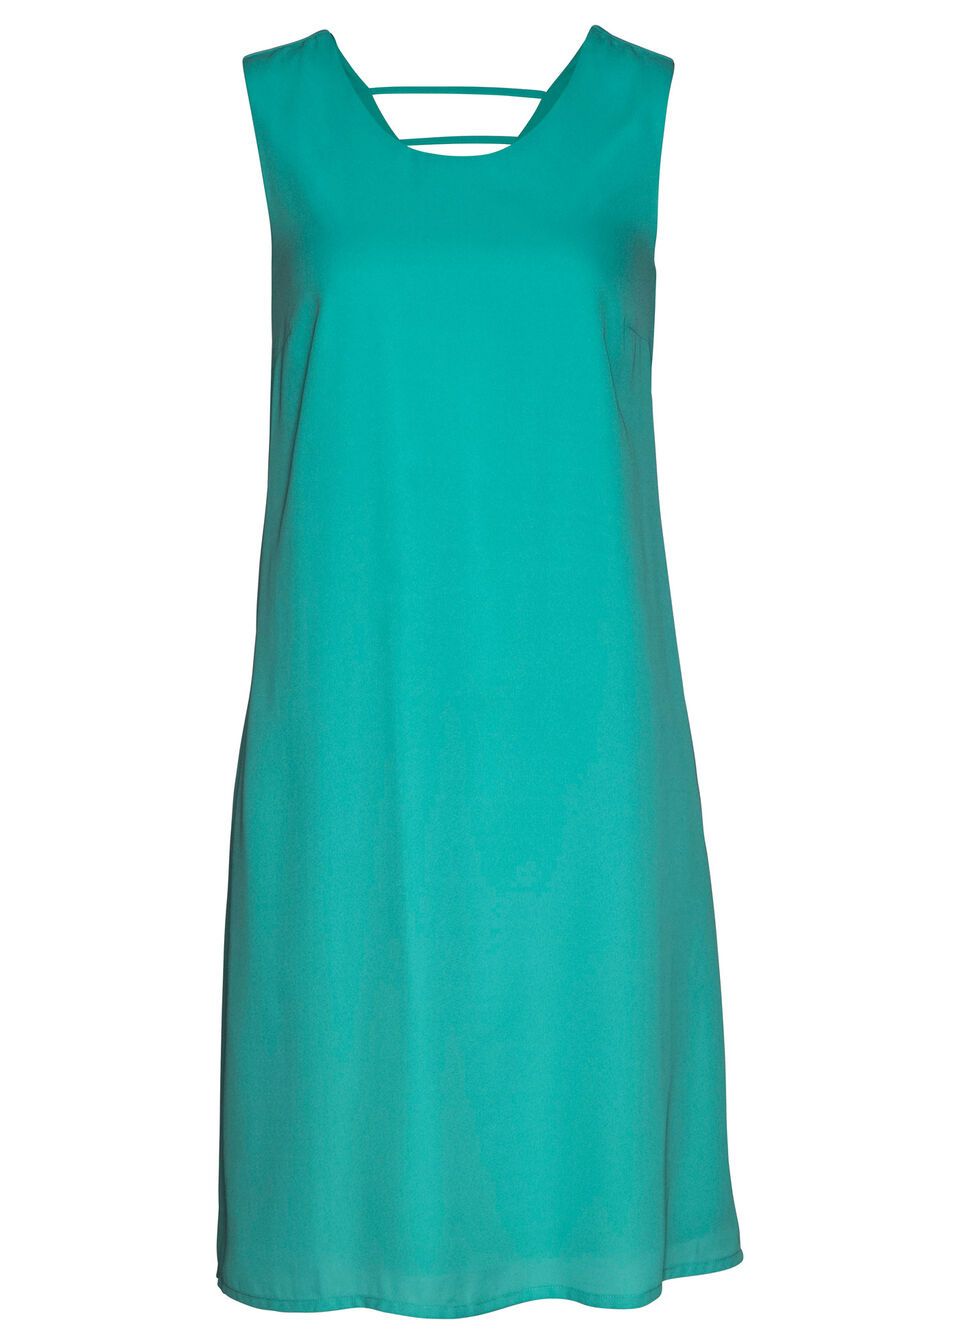 B.P.C sukienka szyfonowa morska zieleń 40.